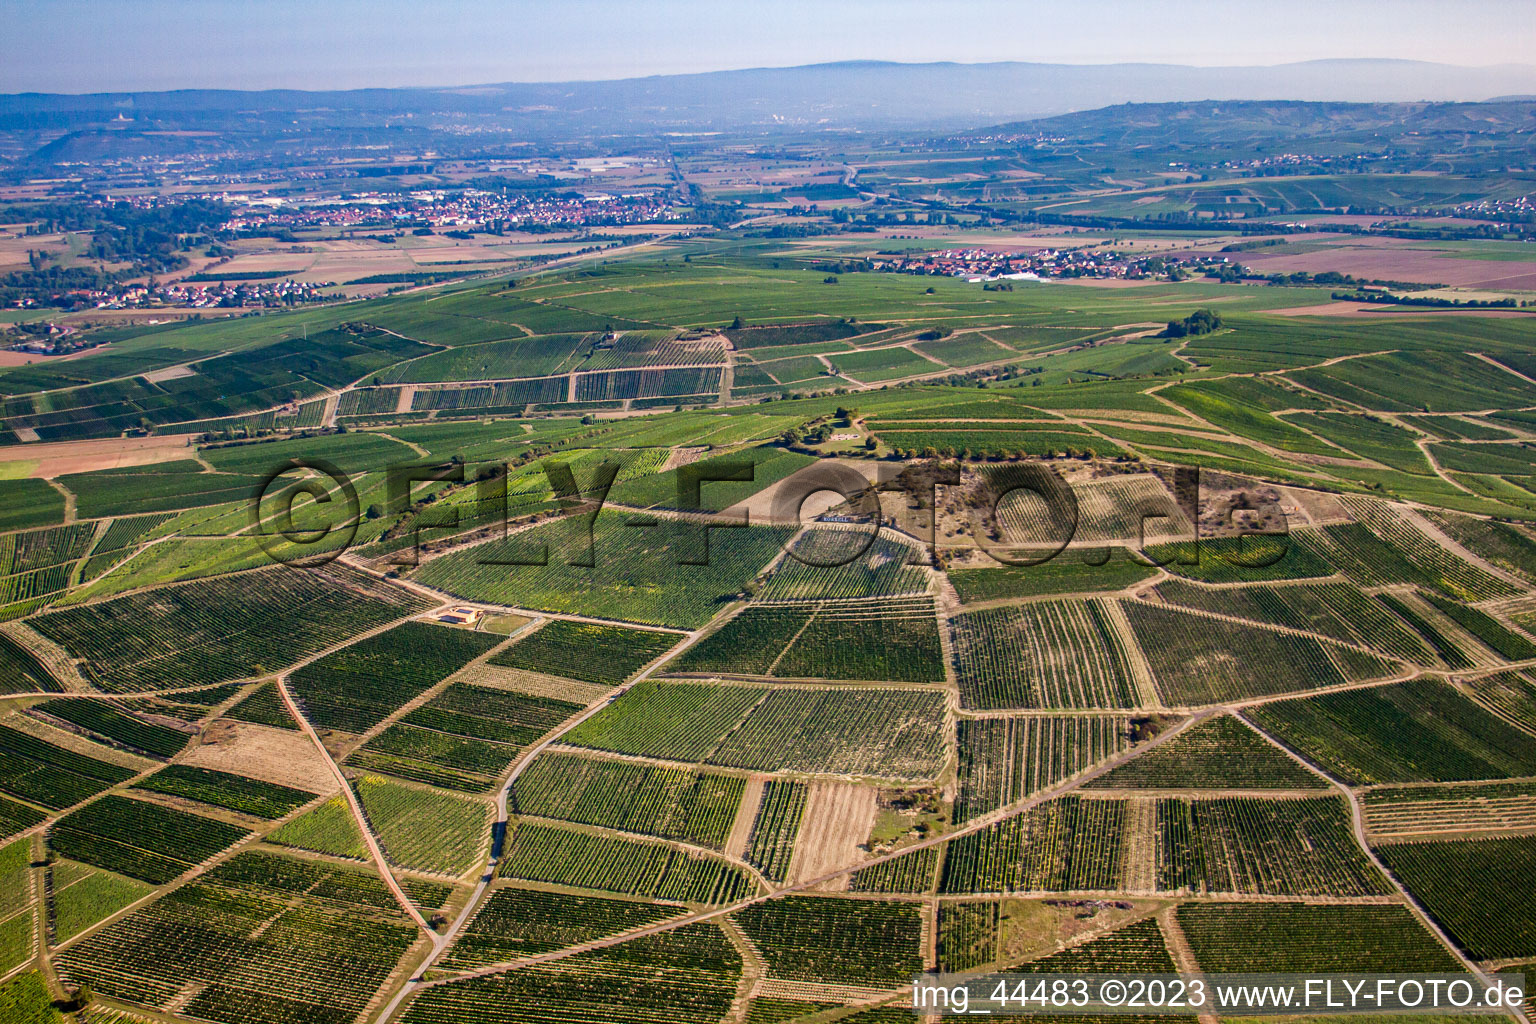 Vue aérienne de Domaine viticole Johanneshof/Korell sur Bosenberg à Pfaffen-Schwabenheim dans le département Rhénanie-Palatinat, Allemagne